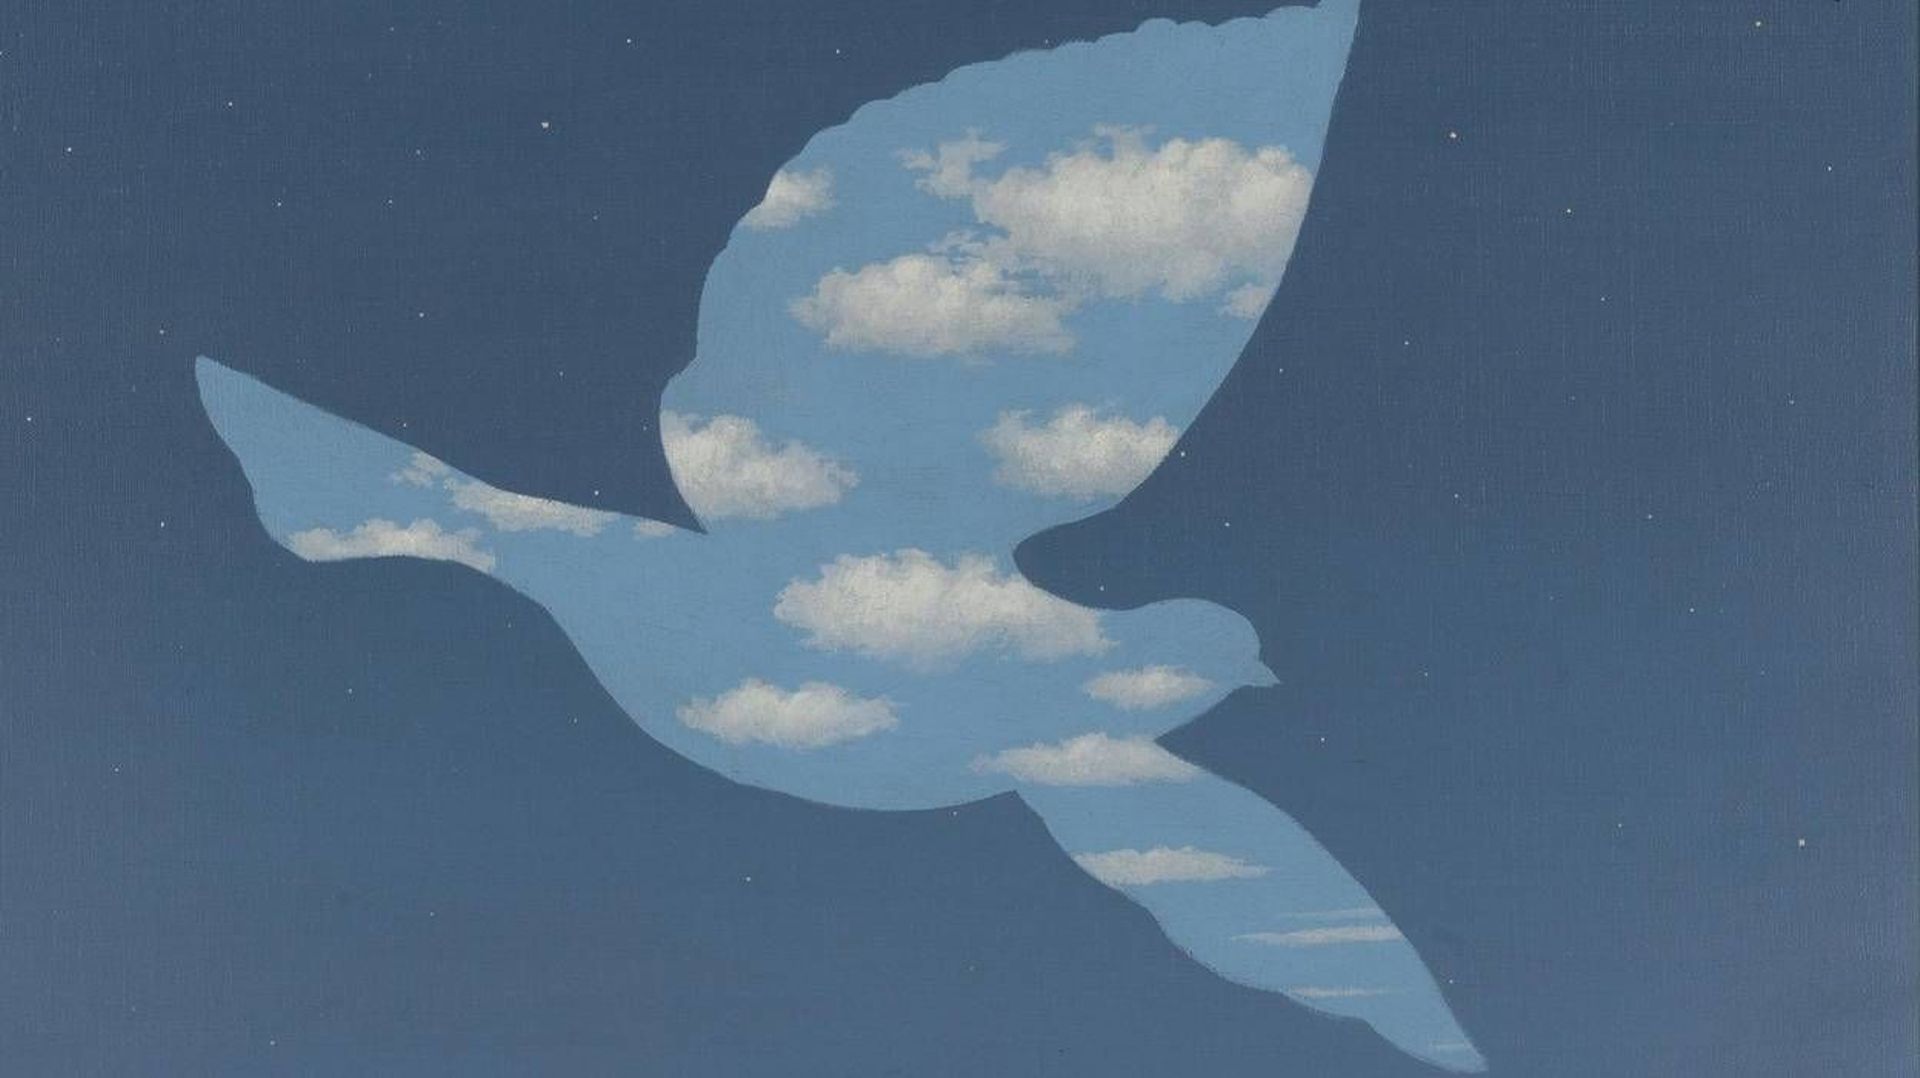 René Magritte, "Le Retour", 1940